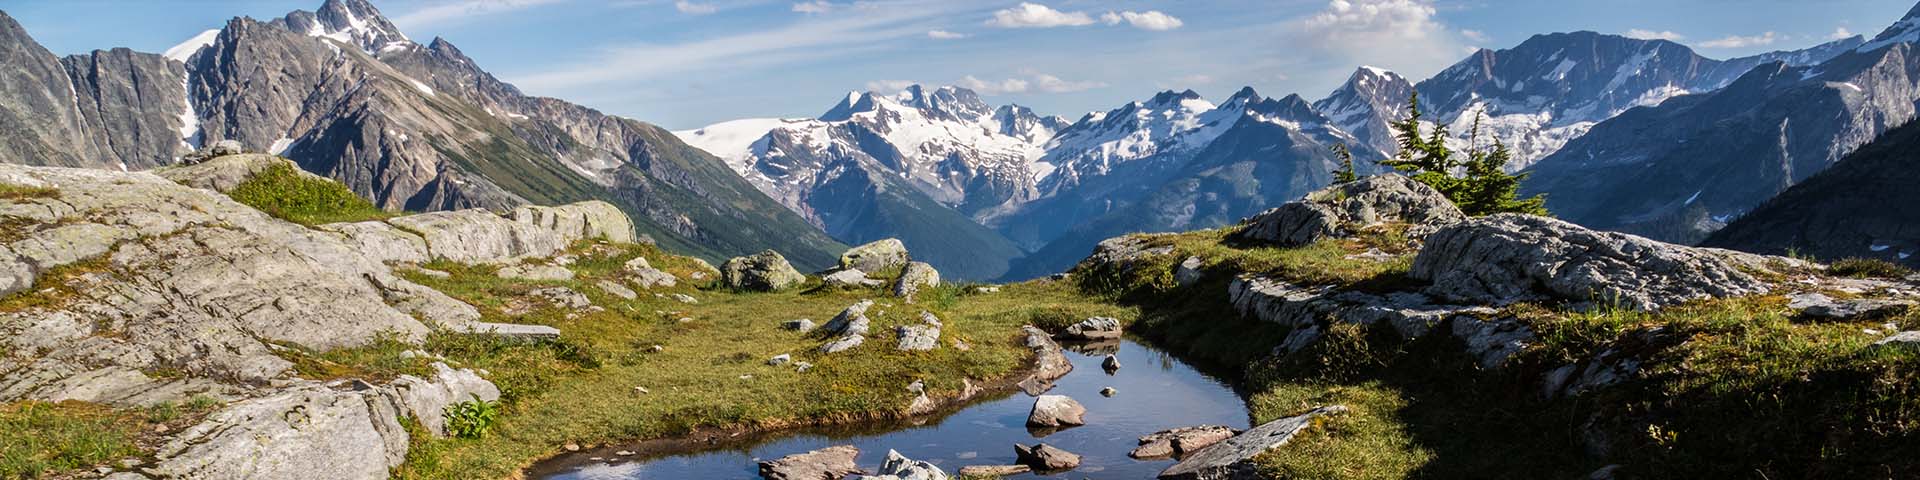  Panorama du paysage de montagnes dans le parc national des Glaciers